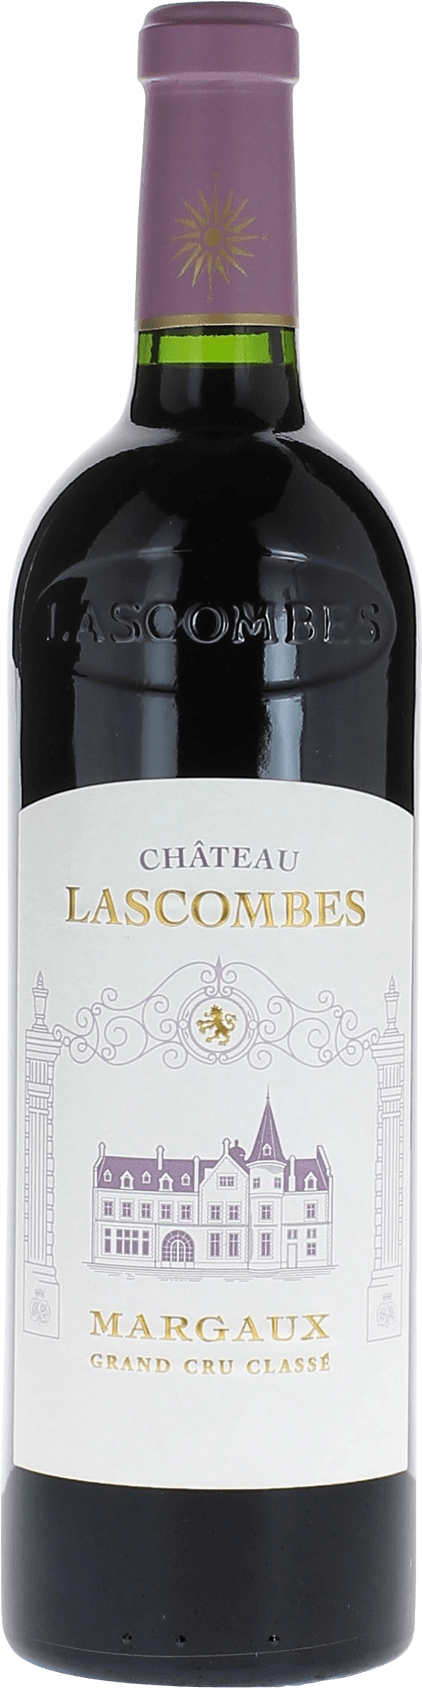 Lascombes 2016 2me Grand cru class Margaux, Bordeaux rouge